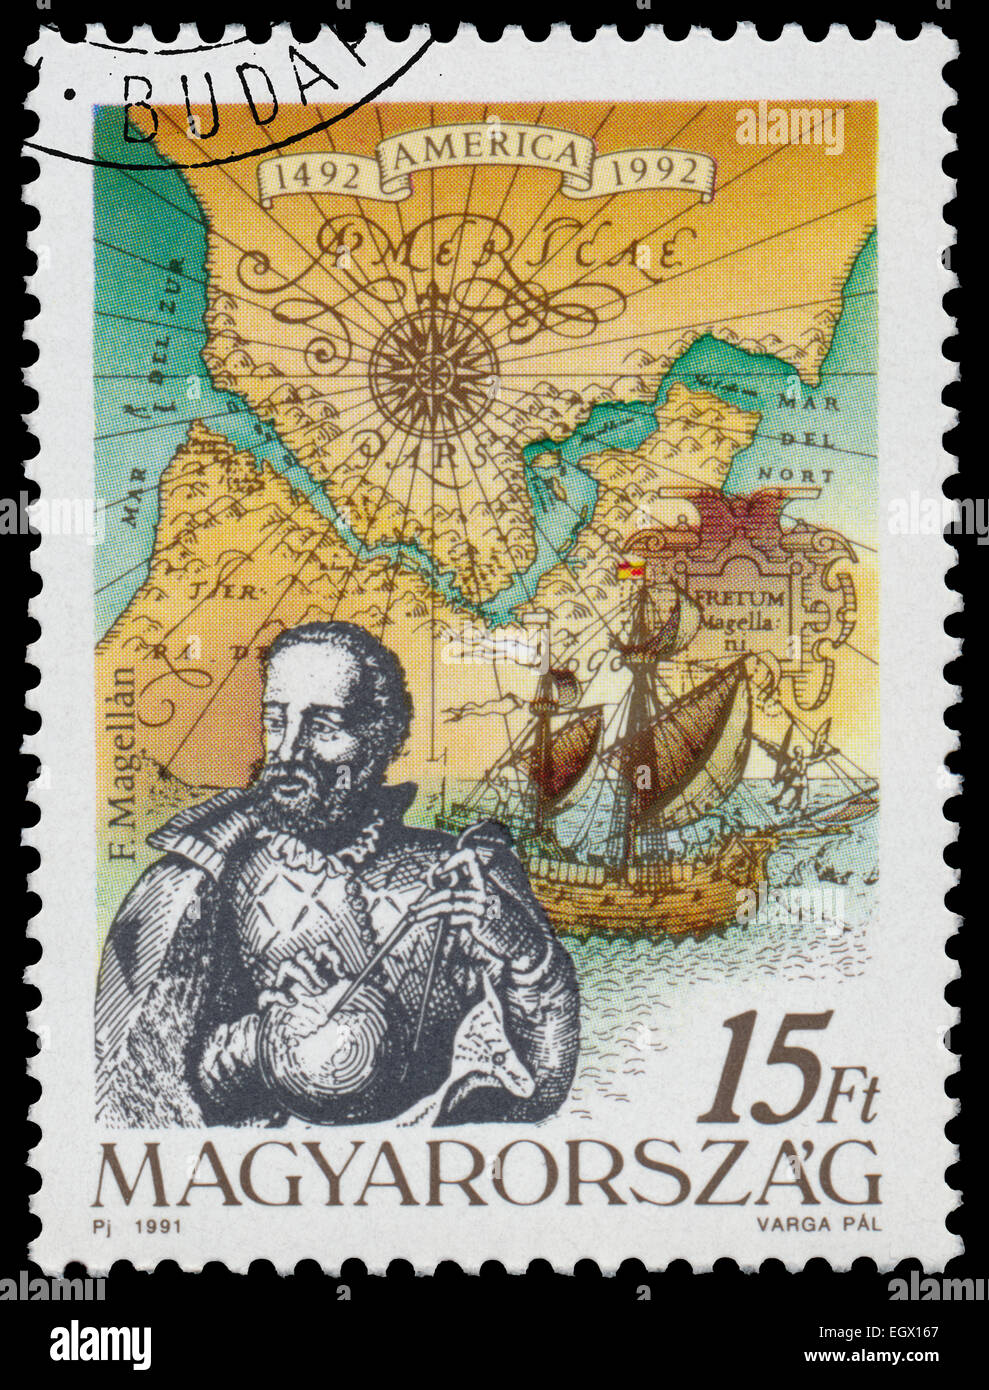 Ungarn - ca. 1991: Briefmarke gedruckt in Ungarn aus der Ausgabe zeigt der 500. Jahrestag der Entdeckung Amerikas F. Magell Stockfoto